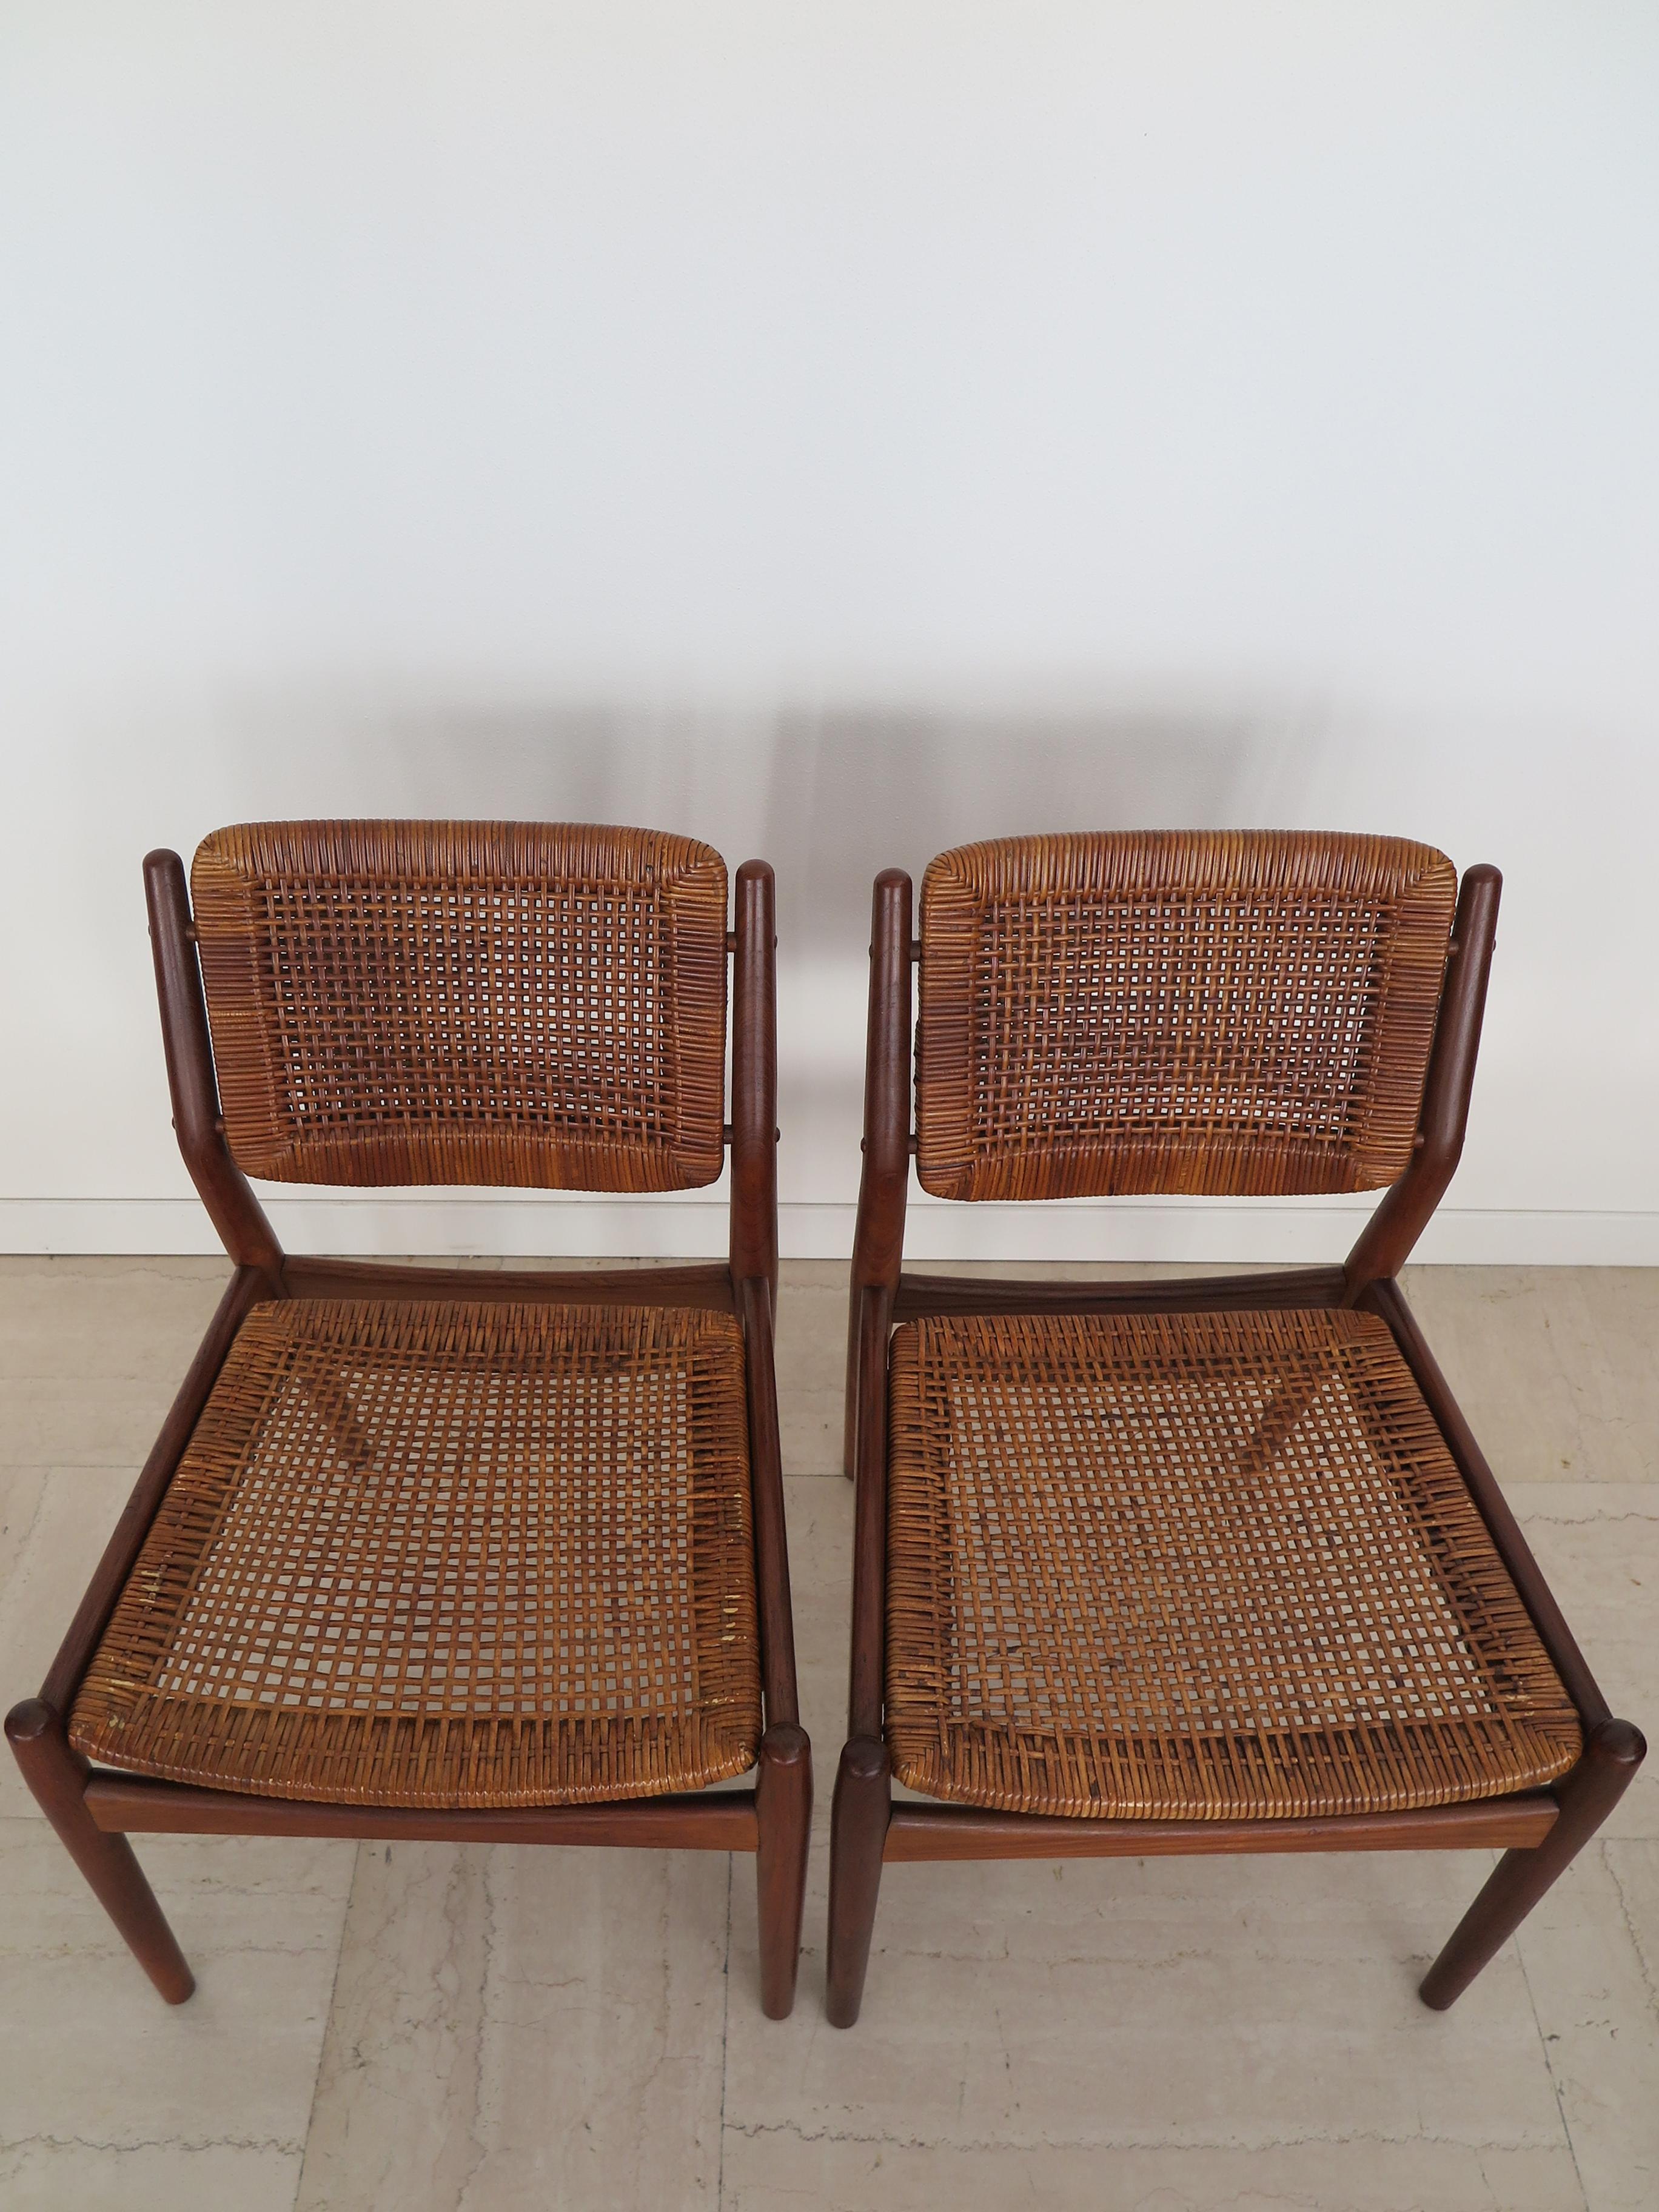 Danish Arne Vodder Midcentury Scandinavian Teak Rattan Chairs for Sibast 1950s For Sale